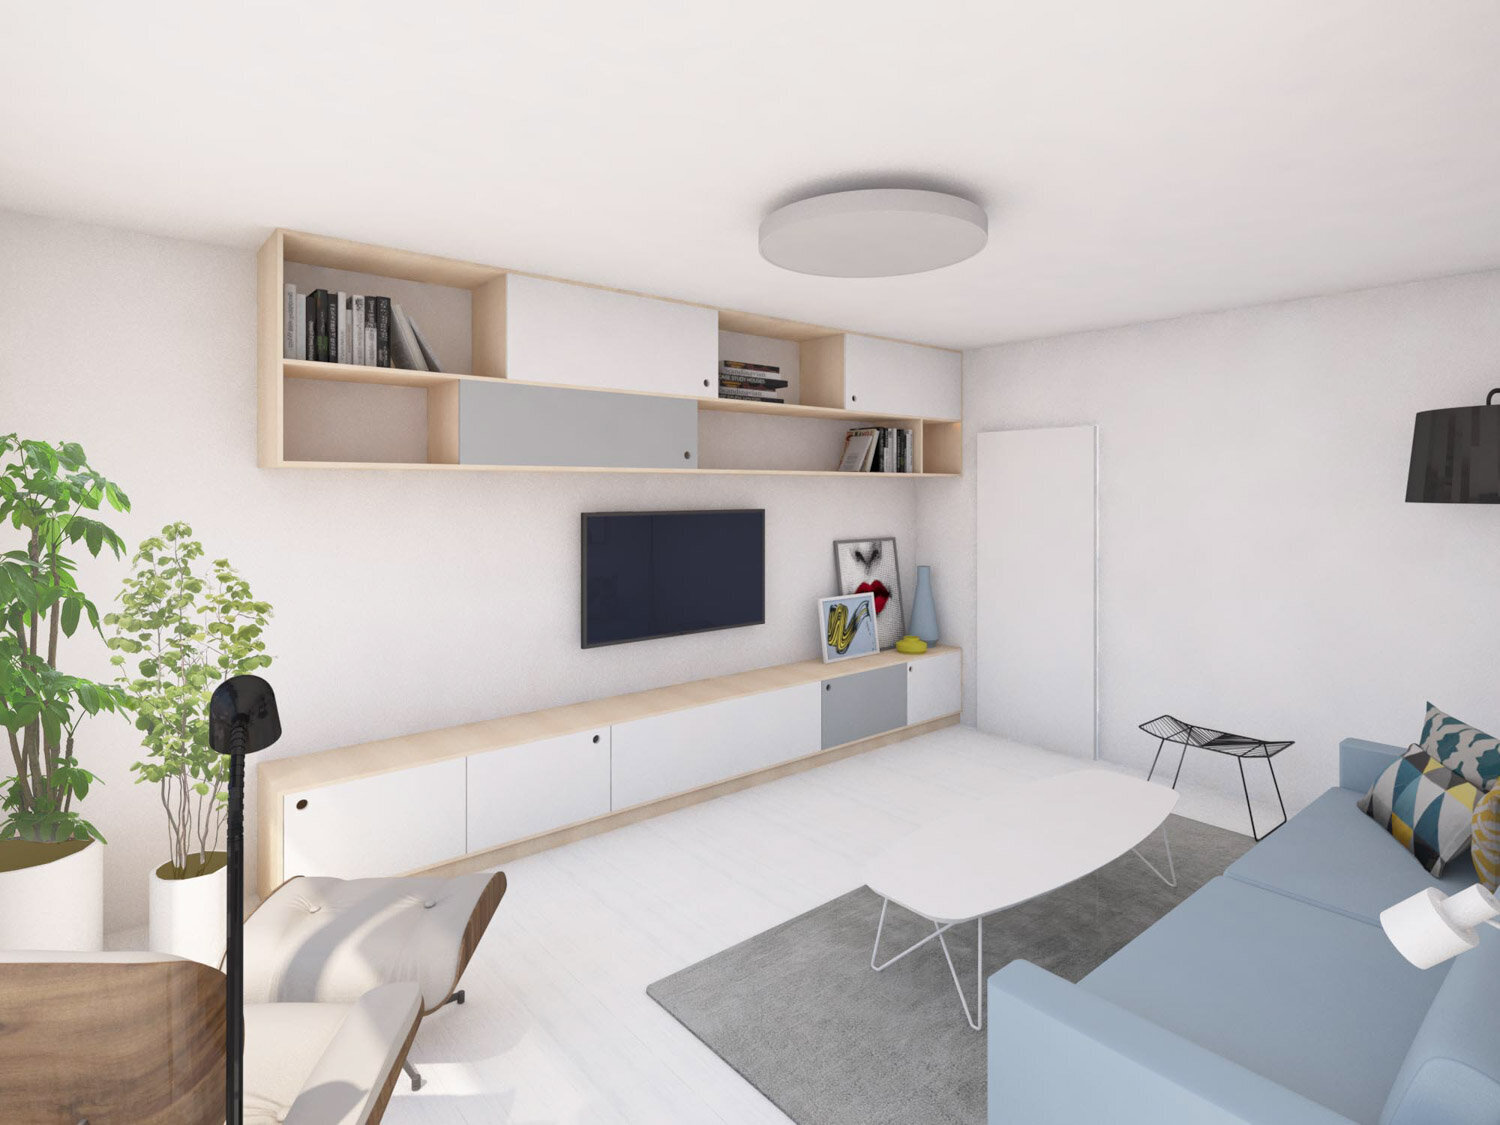 návrh interiéru panelový byt pohled obývák